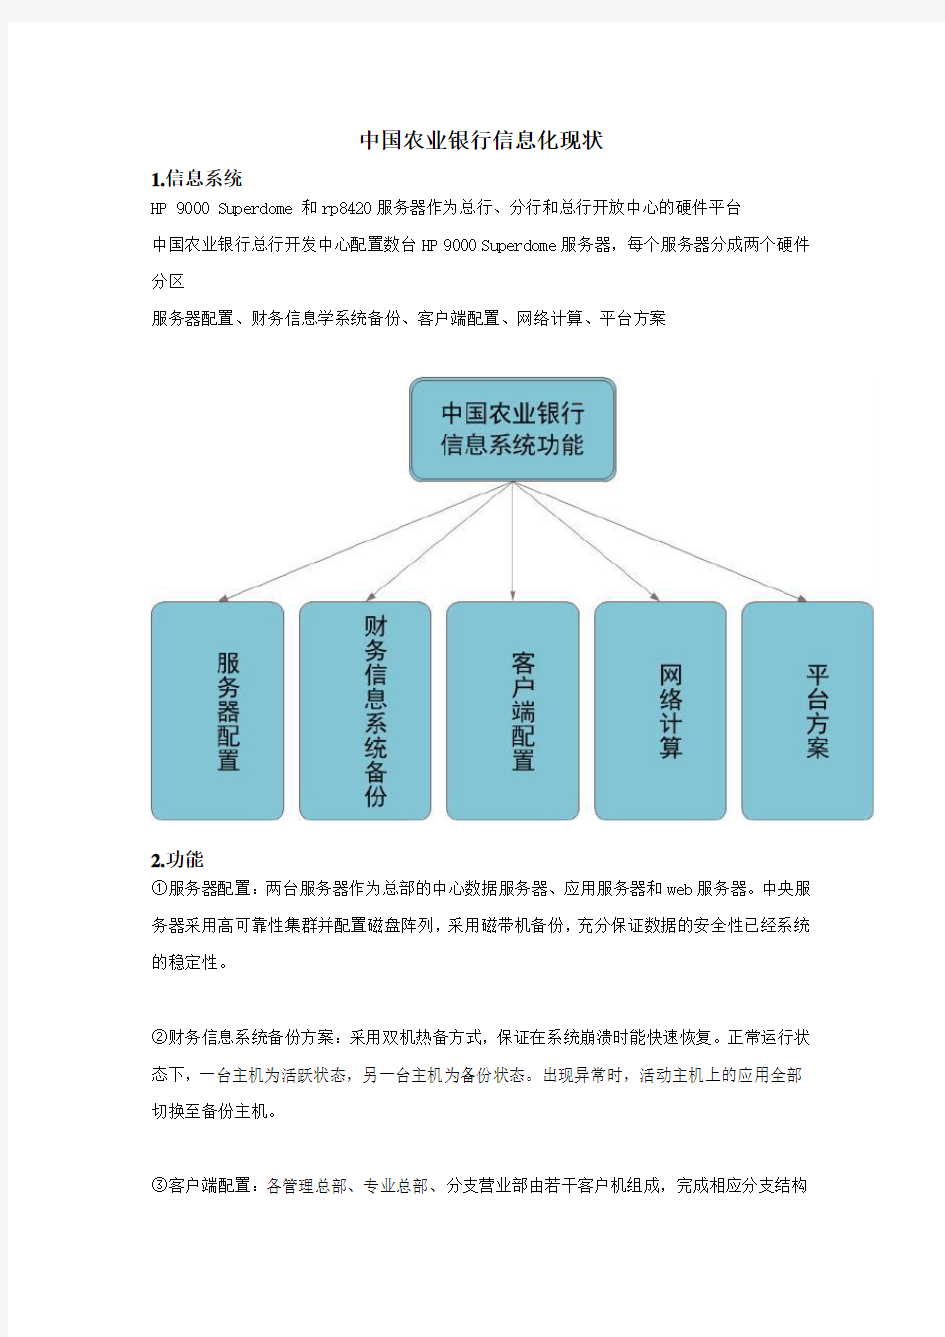 中国农业银行信息化现状(1)